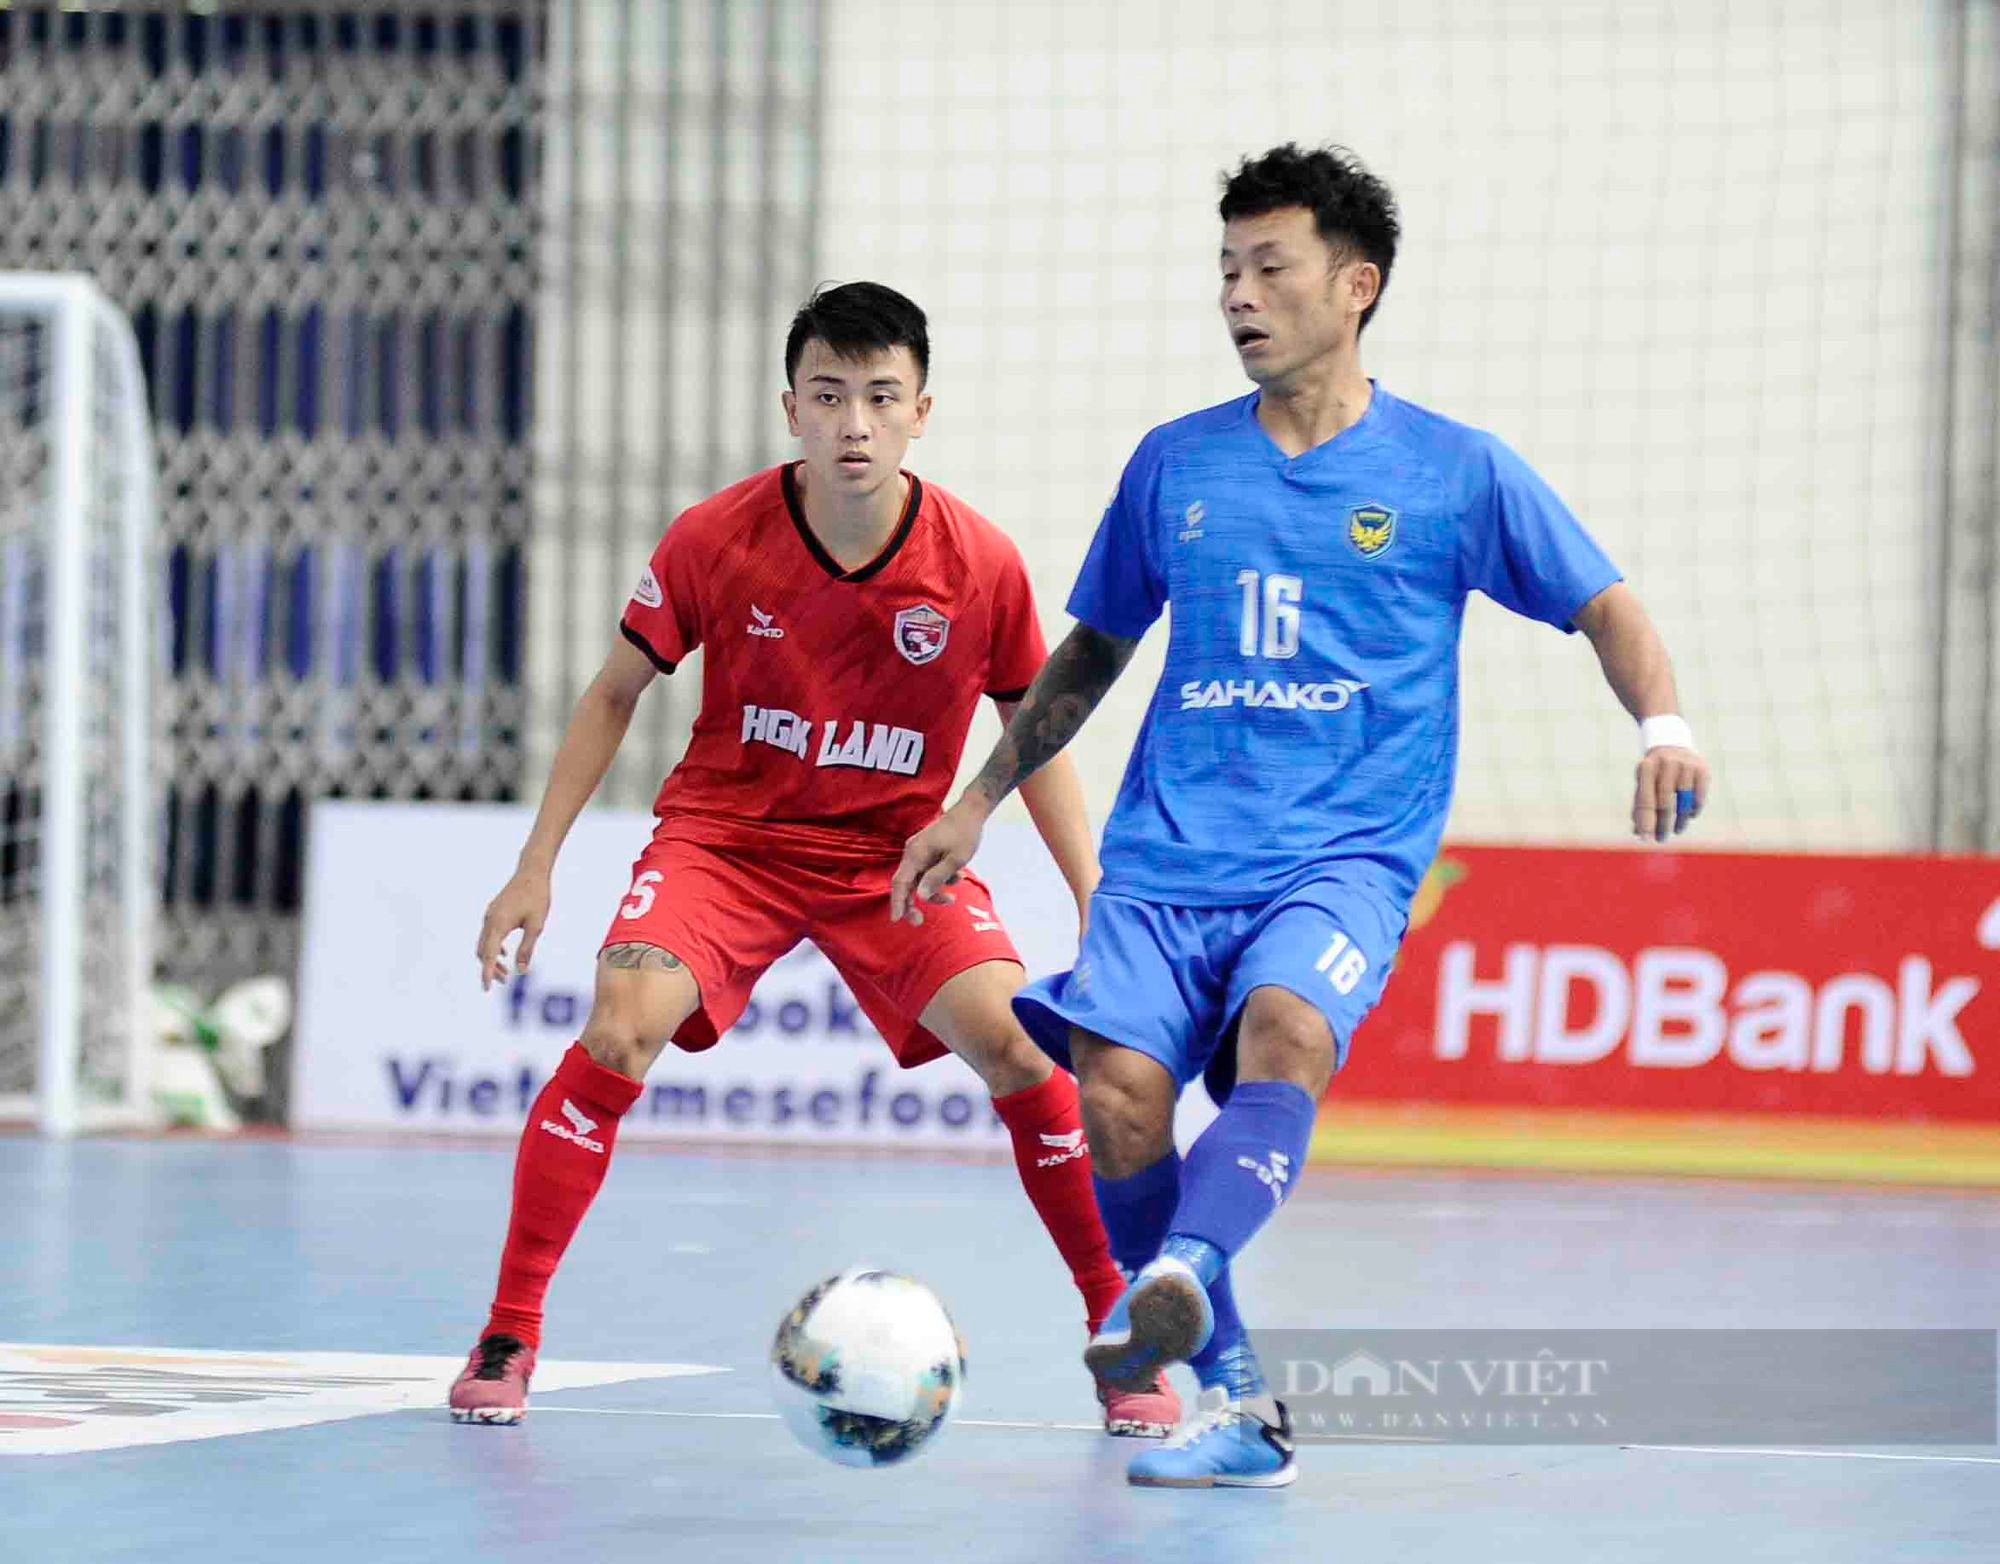 Đánh bại Hưng Gia Khang Đắk Lắk, Sahako vô địch lượt đi Giải futsal vô địch quốc gia 2022. - Ảnh 1.